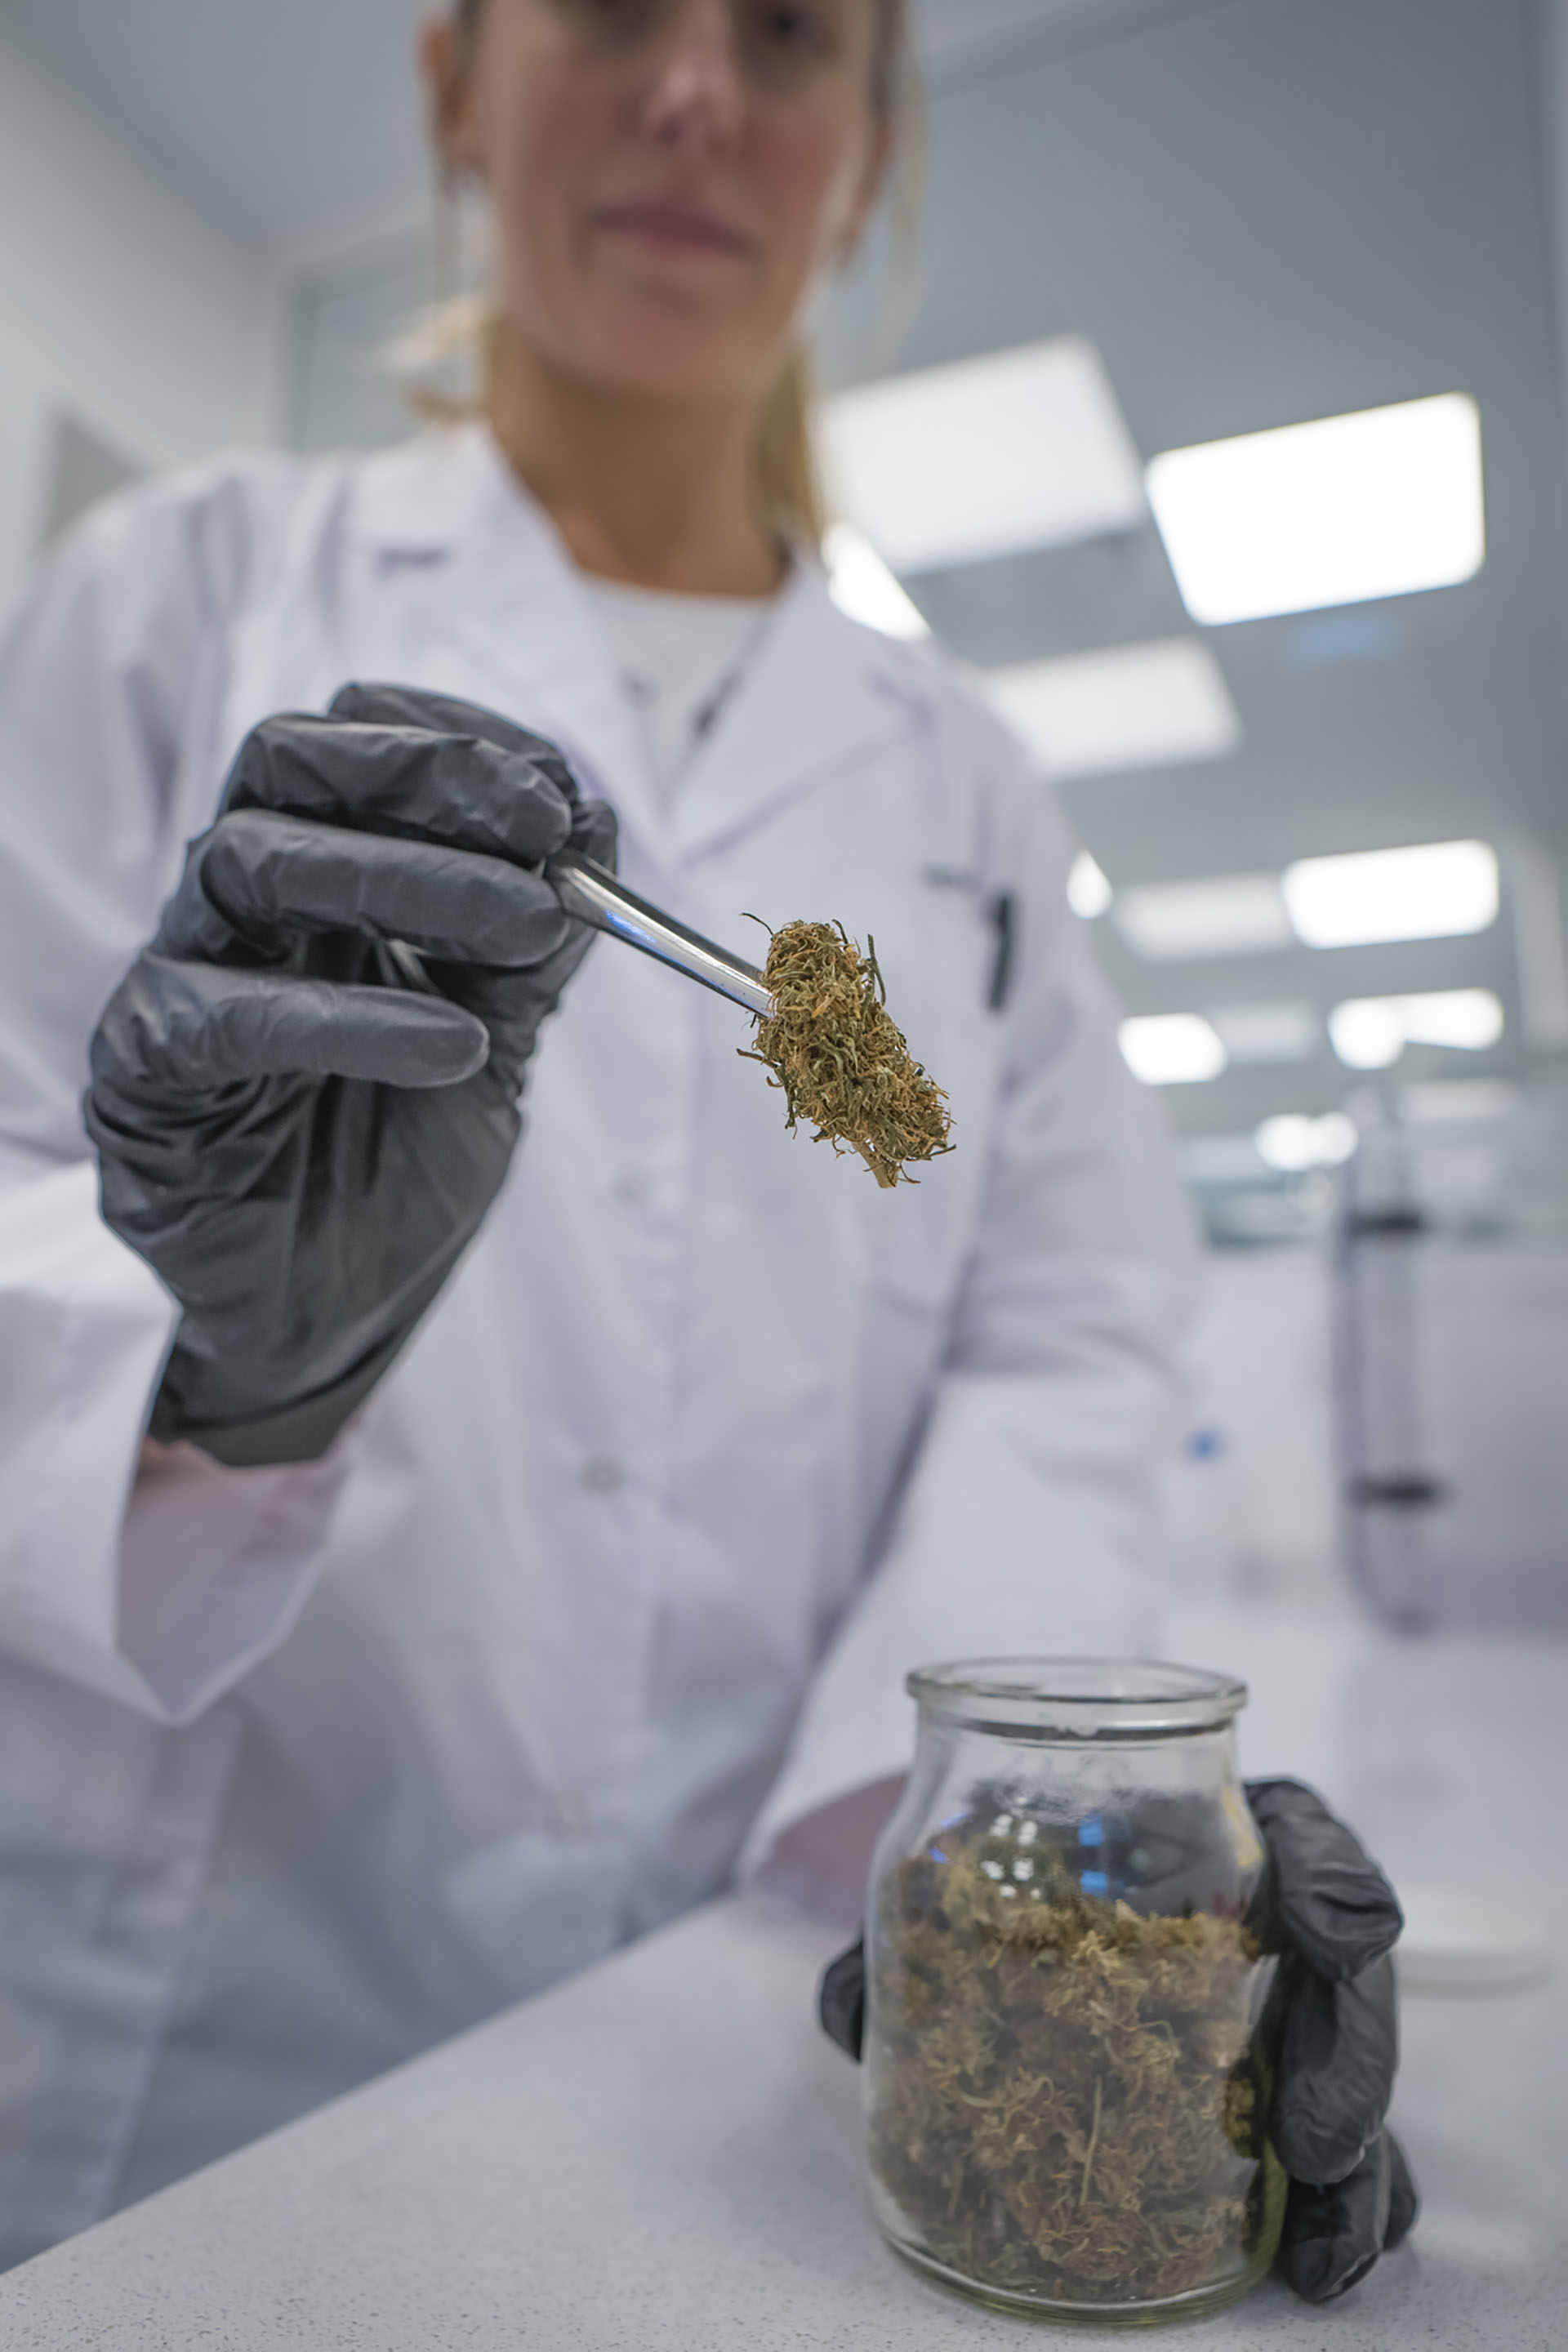 En el laboratorio se analizan los cannabinoides y los terpenos de la flor de cannabis, entre otros servicios (Gentileza Hemp Lab)